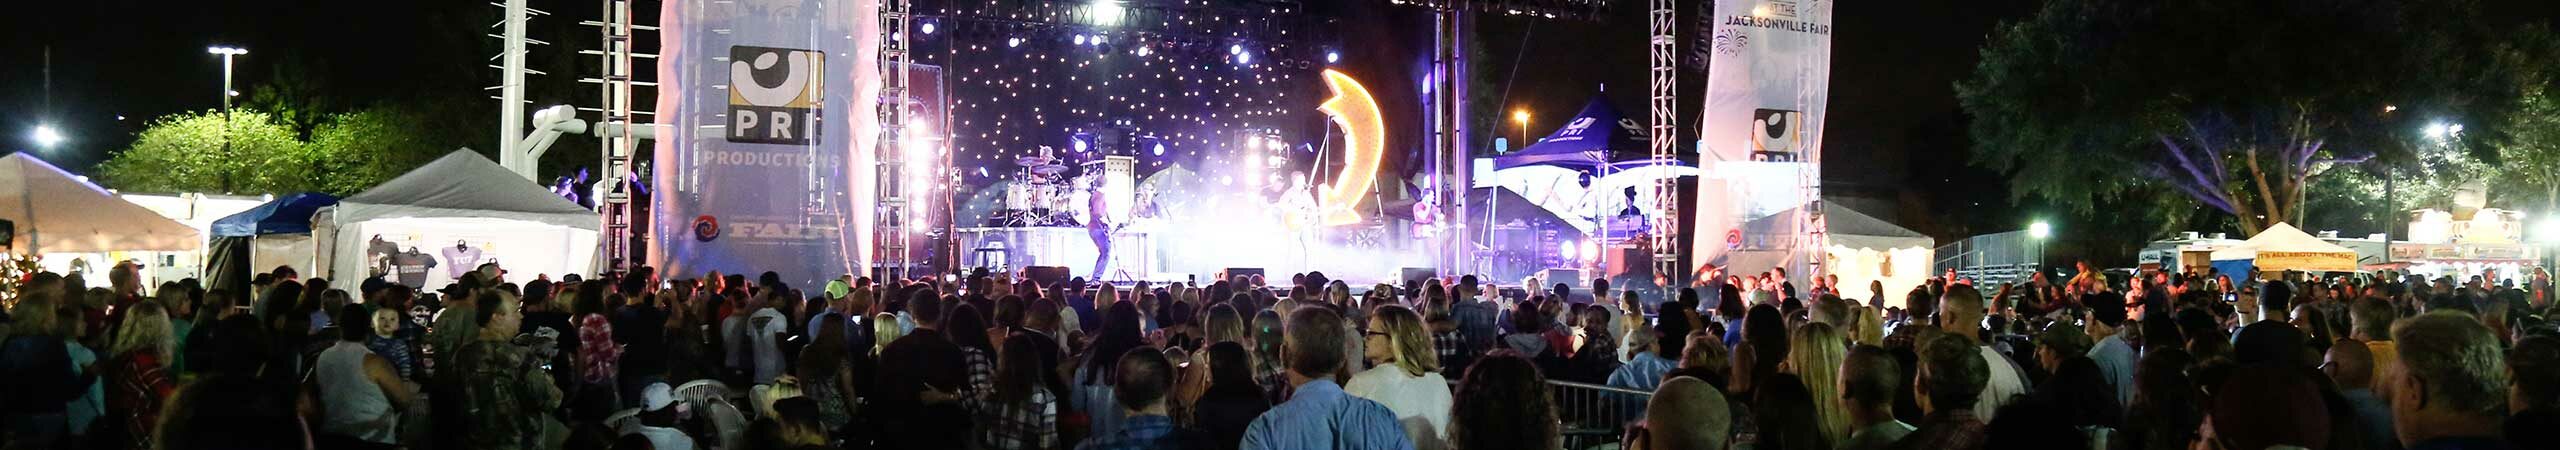 Jacksonville FL Festivals